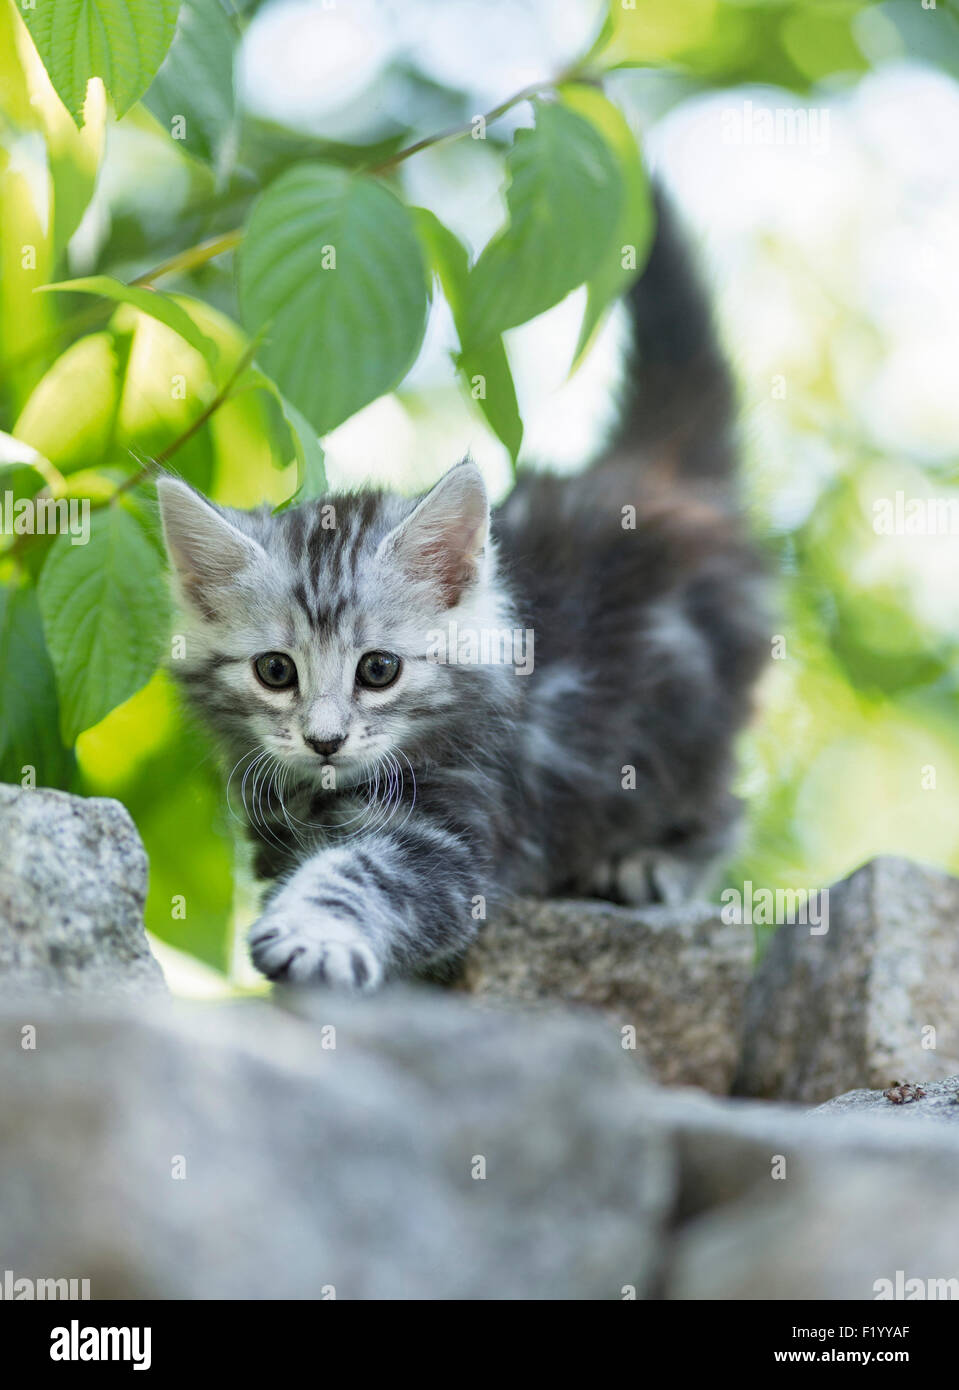 Norwegian Forest Cat Tabby kitten walking paving blocks Germany Stock Photo